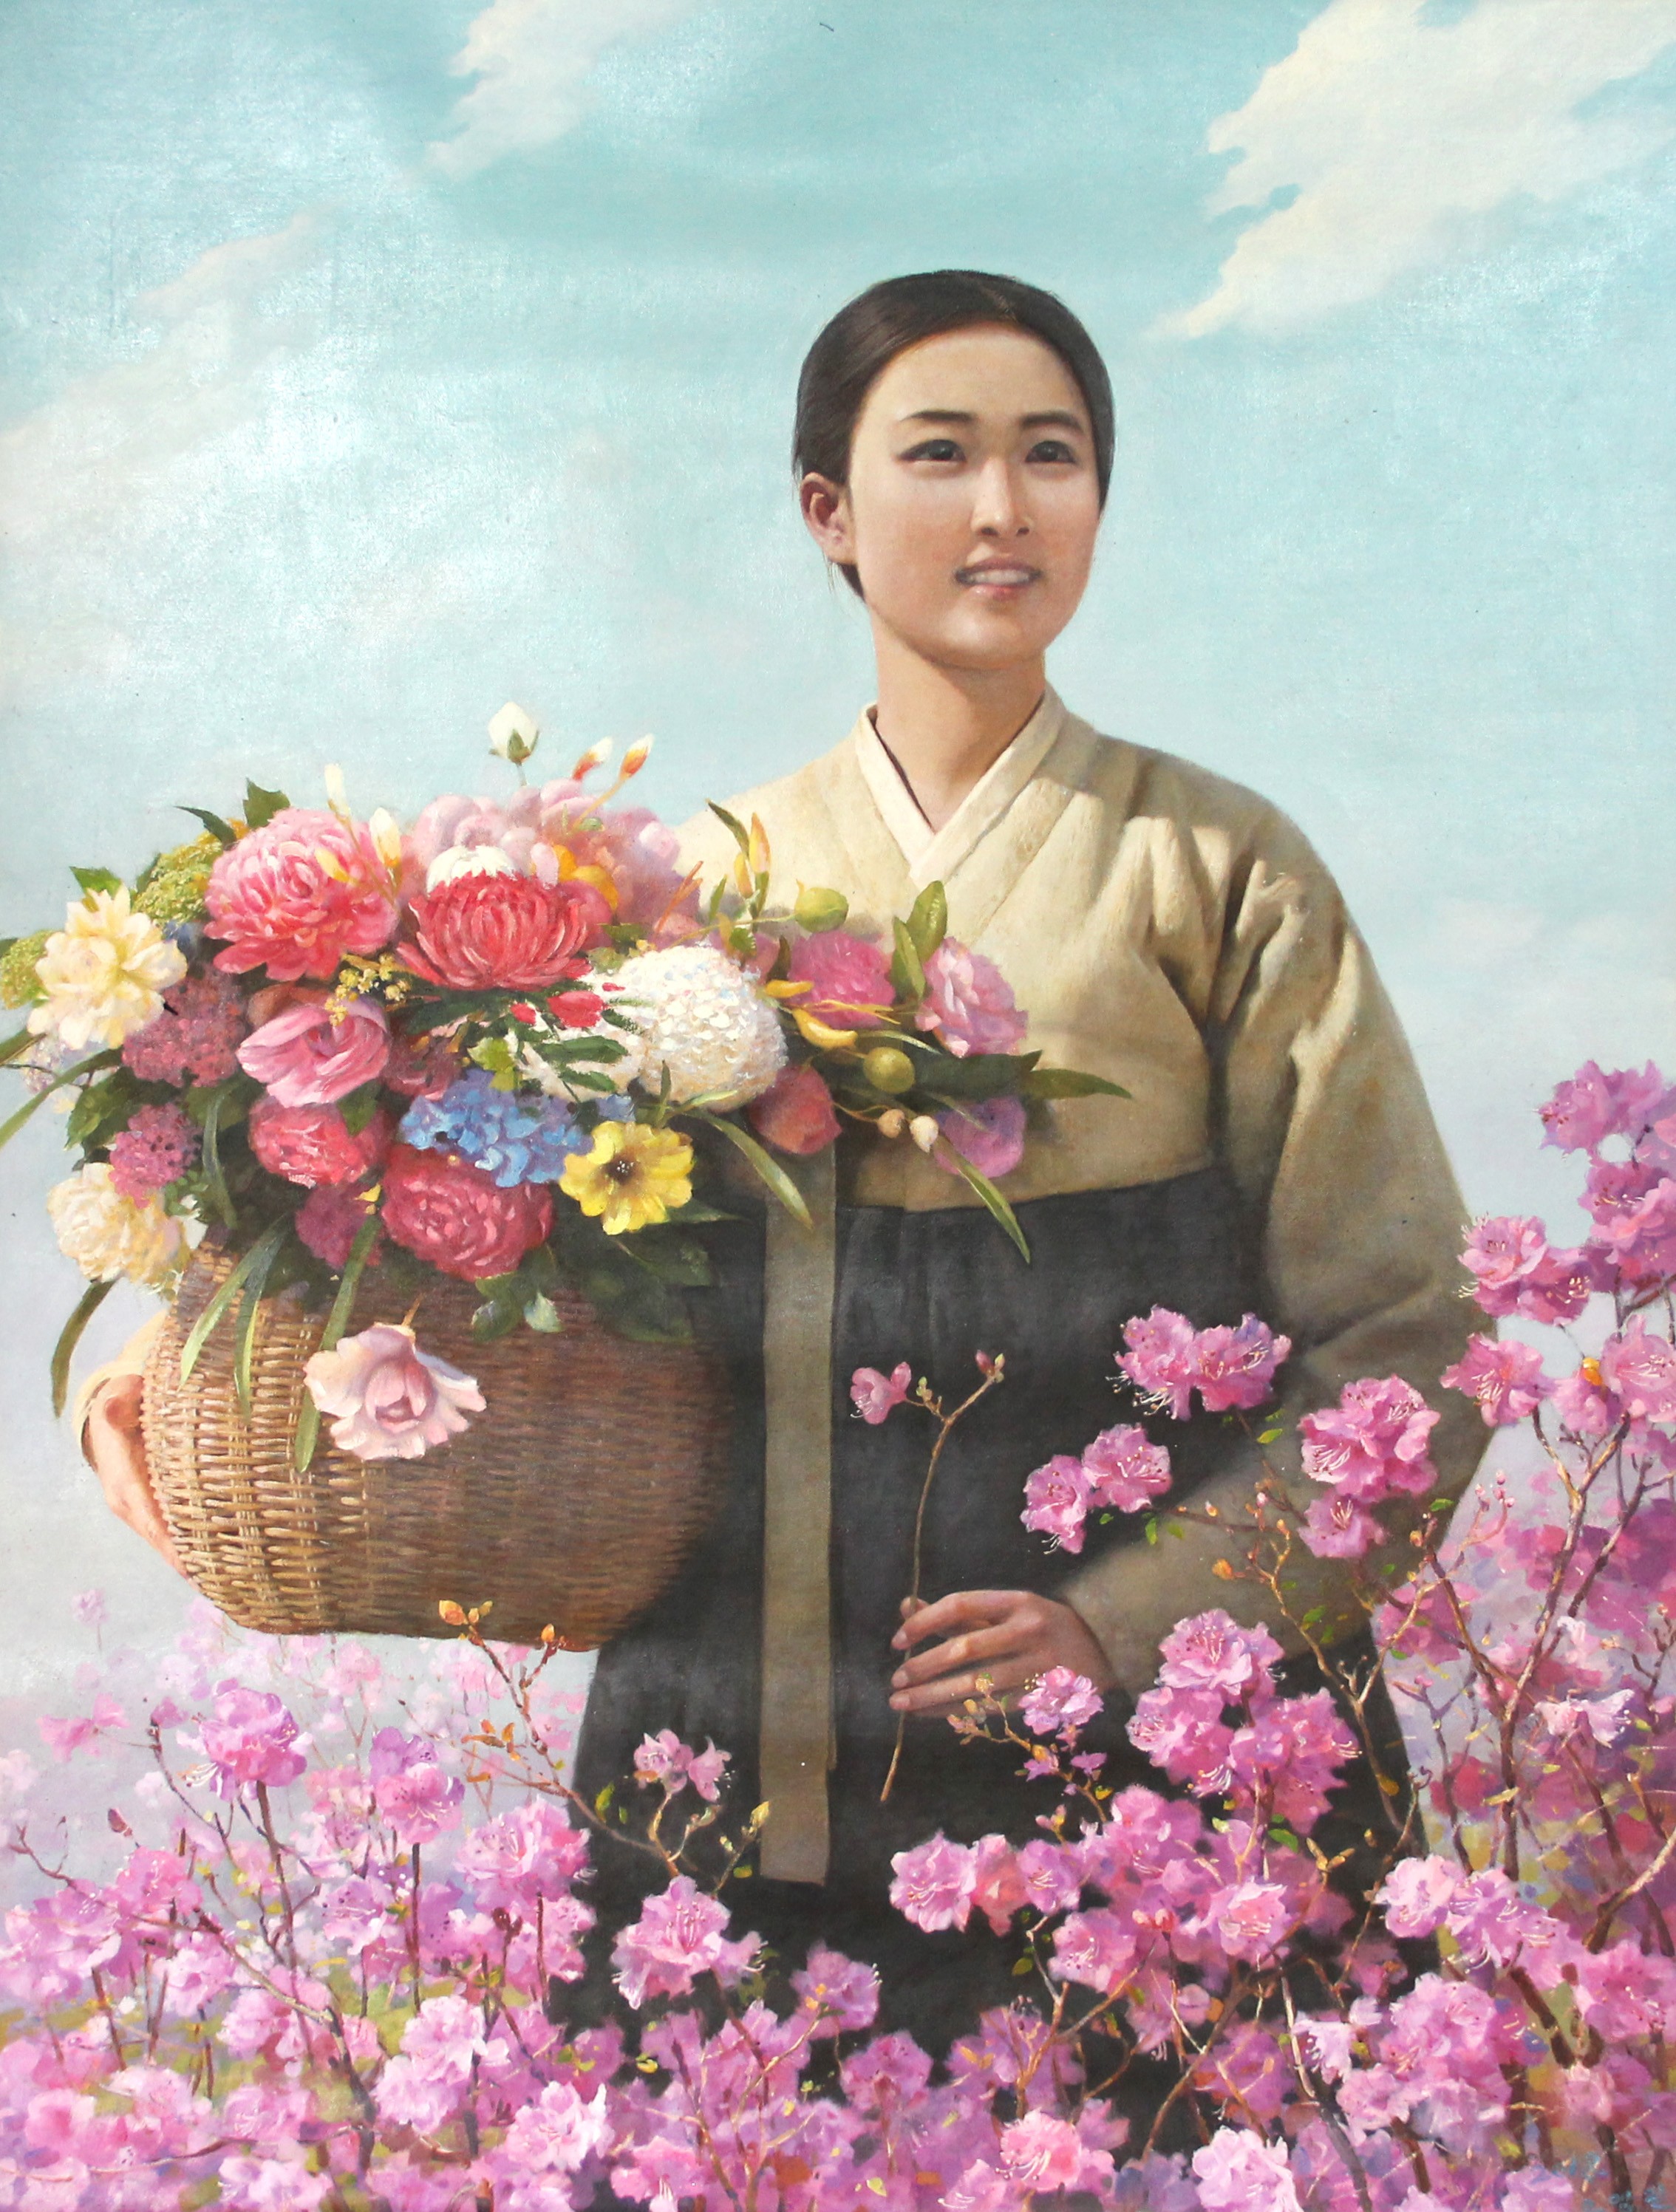 朝鲜油画一级画家吴永镇卖花姑娘